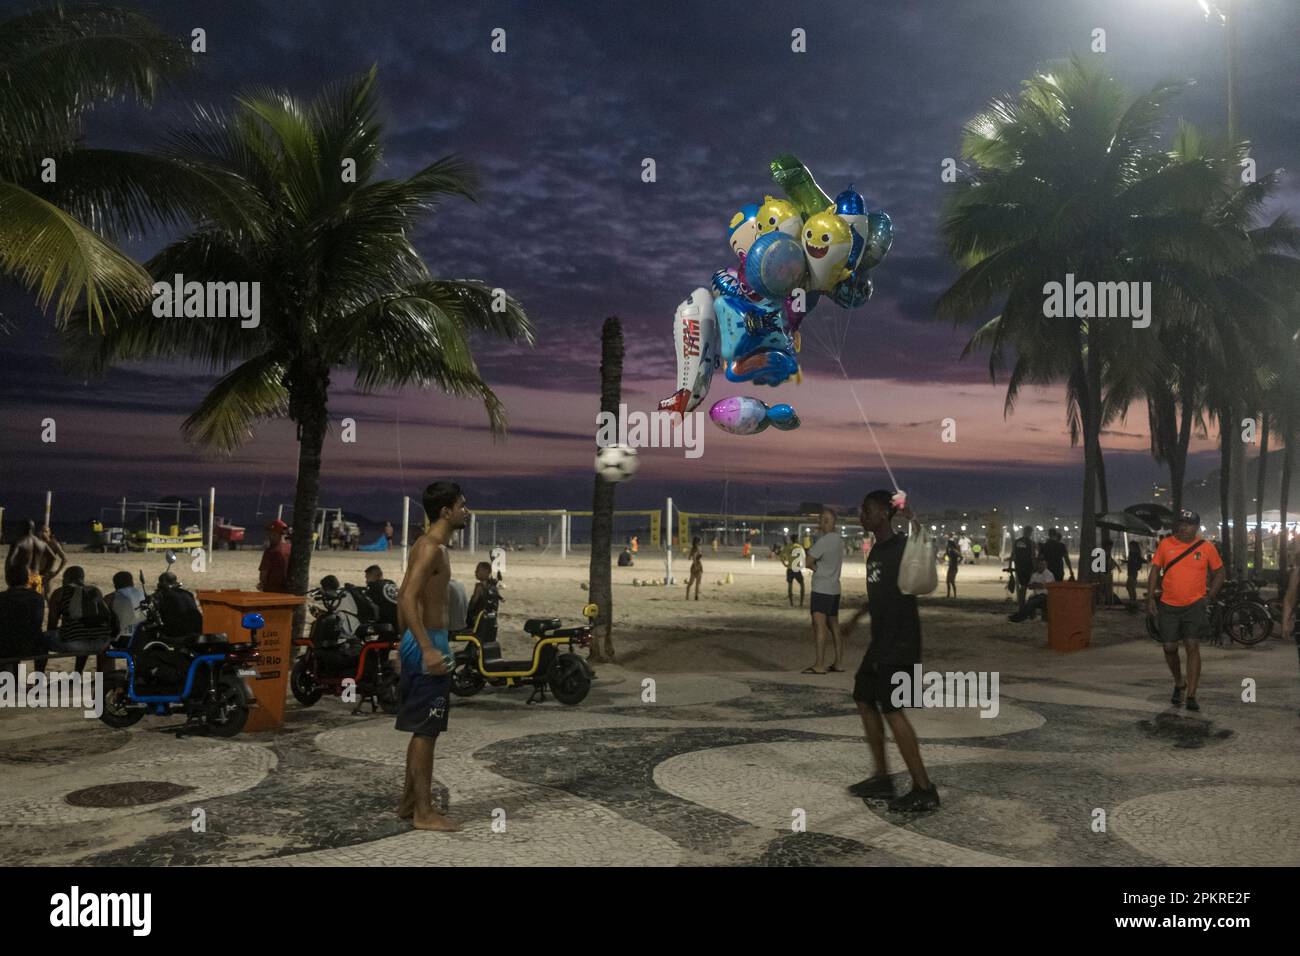 Der Spielzeugballonverkäufer hört für ein paar Minuten auf zu arbeiten, um mit einem Kollegen auf der Copacabana Promenade mit einem Fußball zu spielen. Rio de Janeiro Lifestyle, Brasilien. Stockfoto